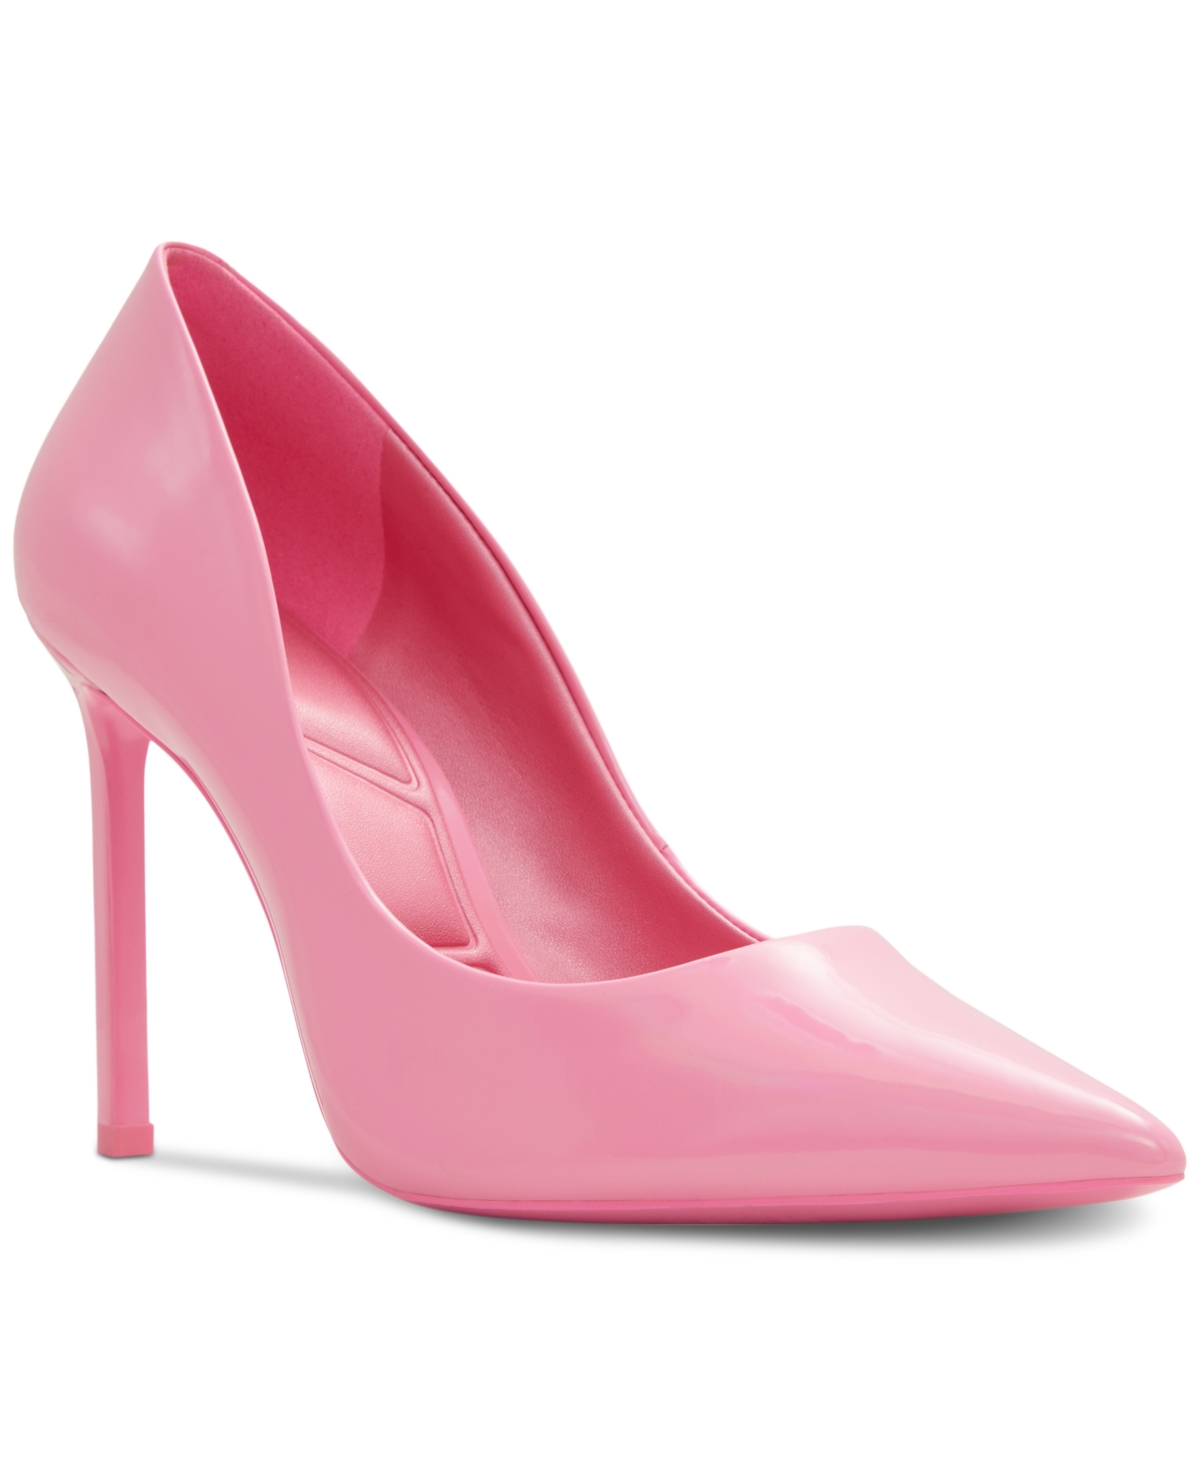 Aldo Women's Stessy 2.0 Pointed-Toe Stiletto-Heel Pumps Women's Shoes